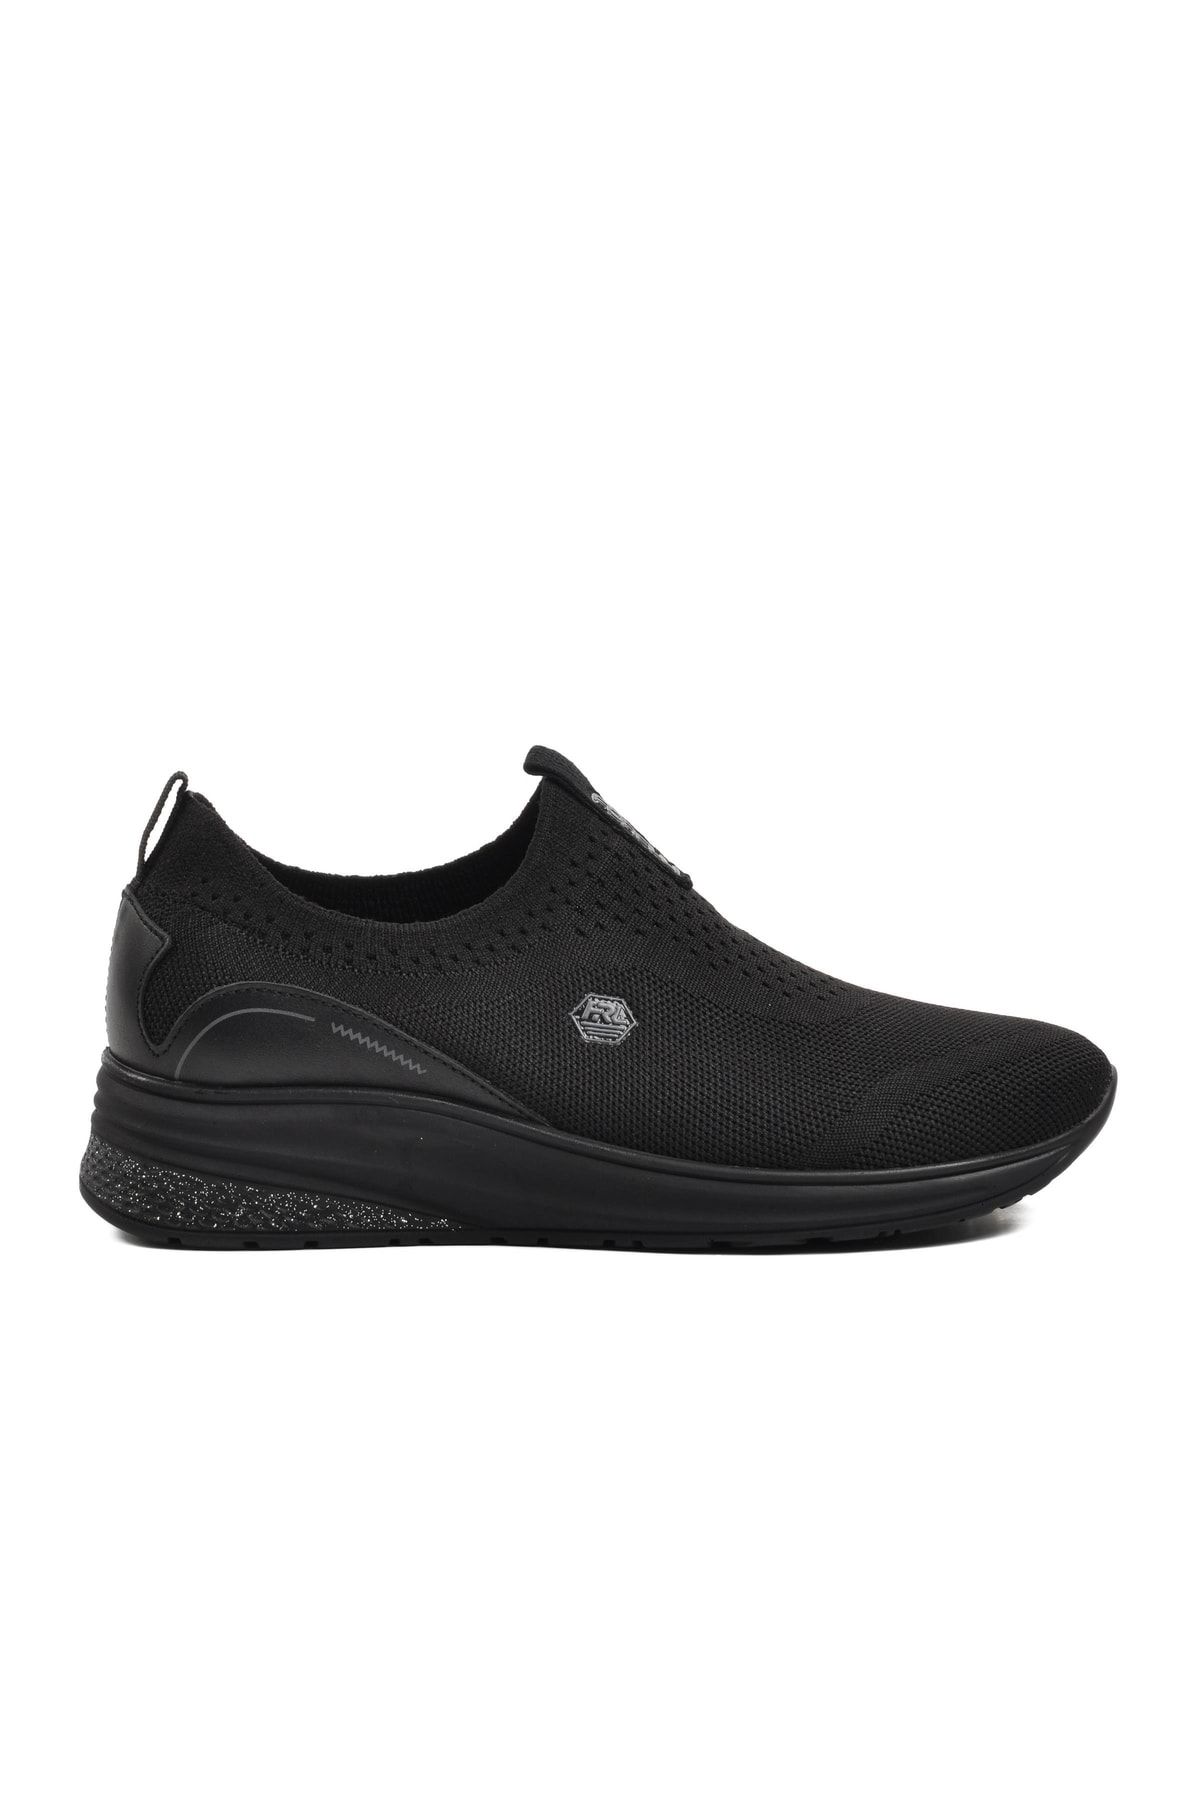 Forelli 30007 Elvin Siyah Kadın Spor Ayakkabı Fiyatı, Yorumları - Trendyol